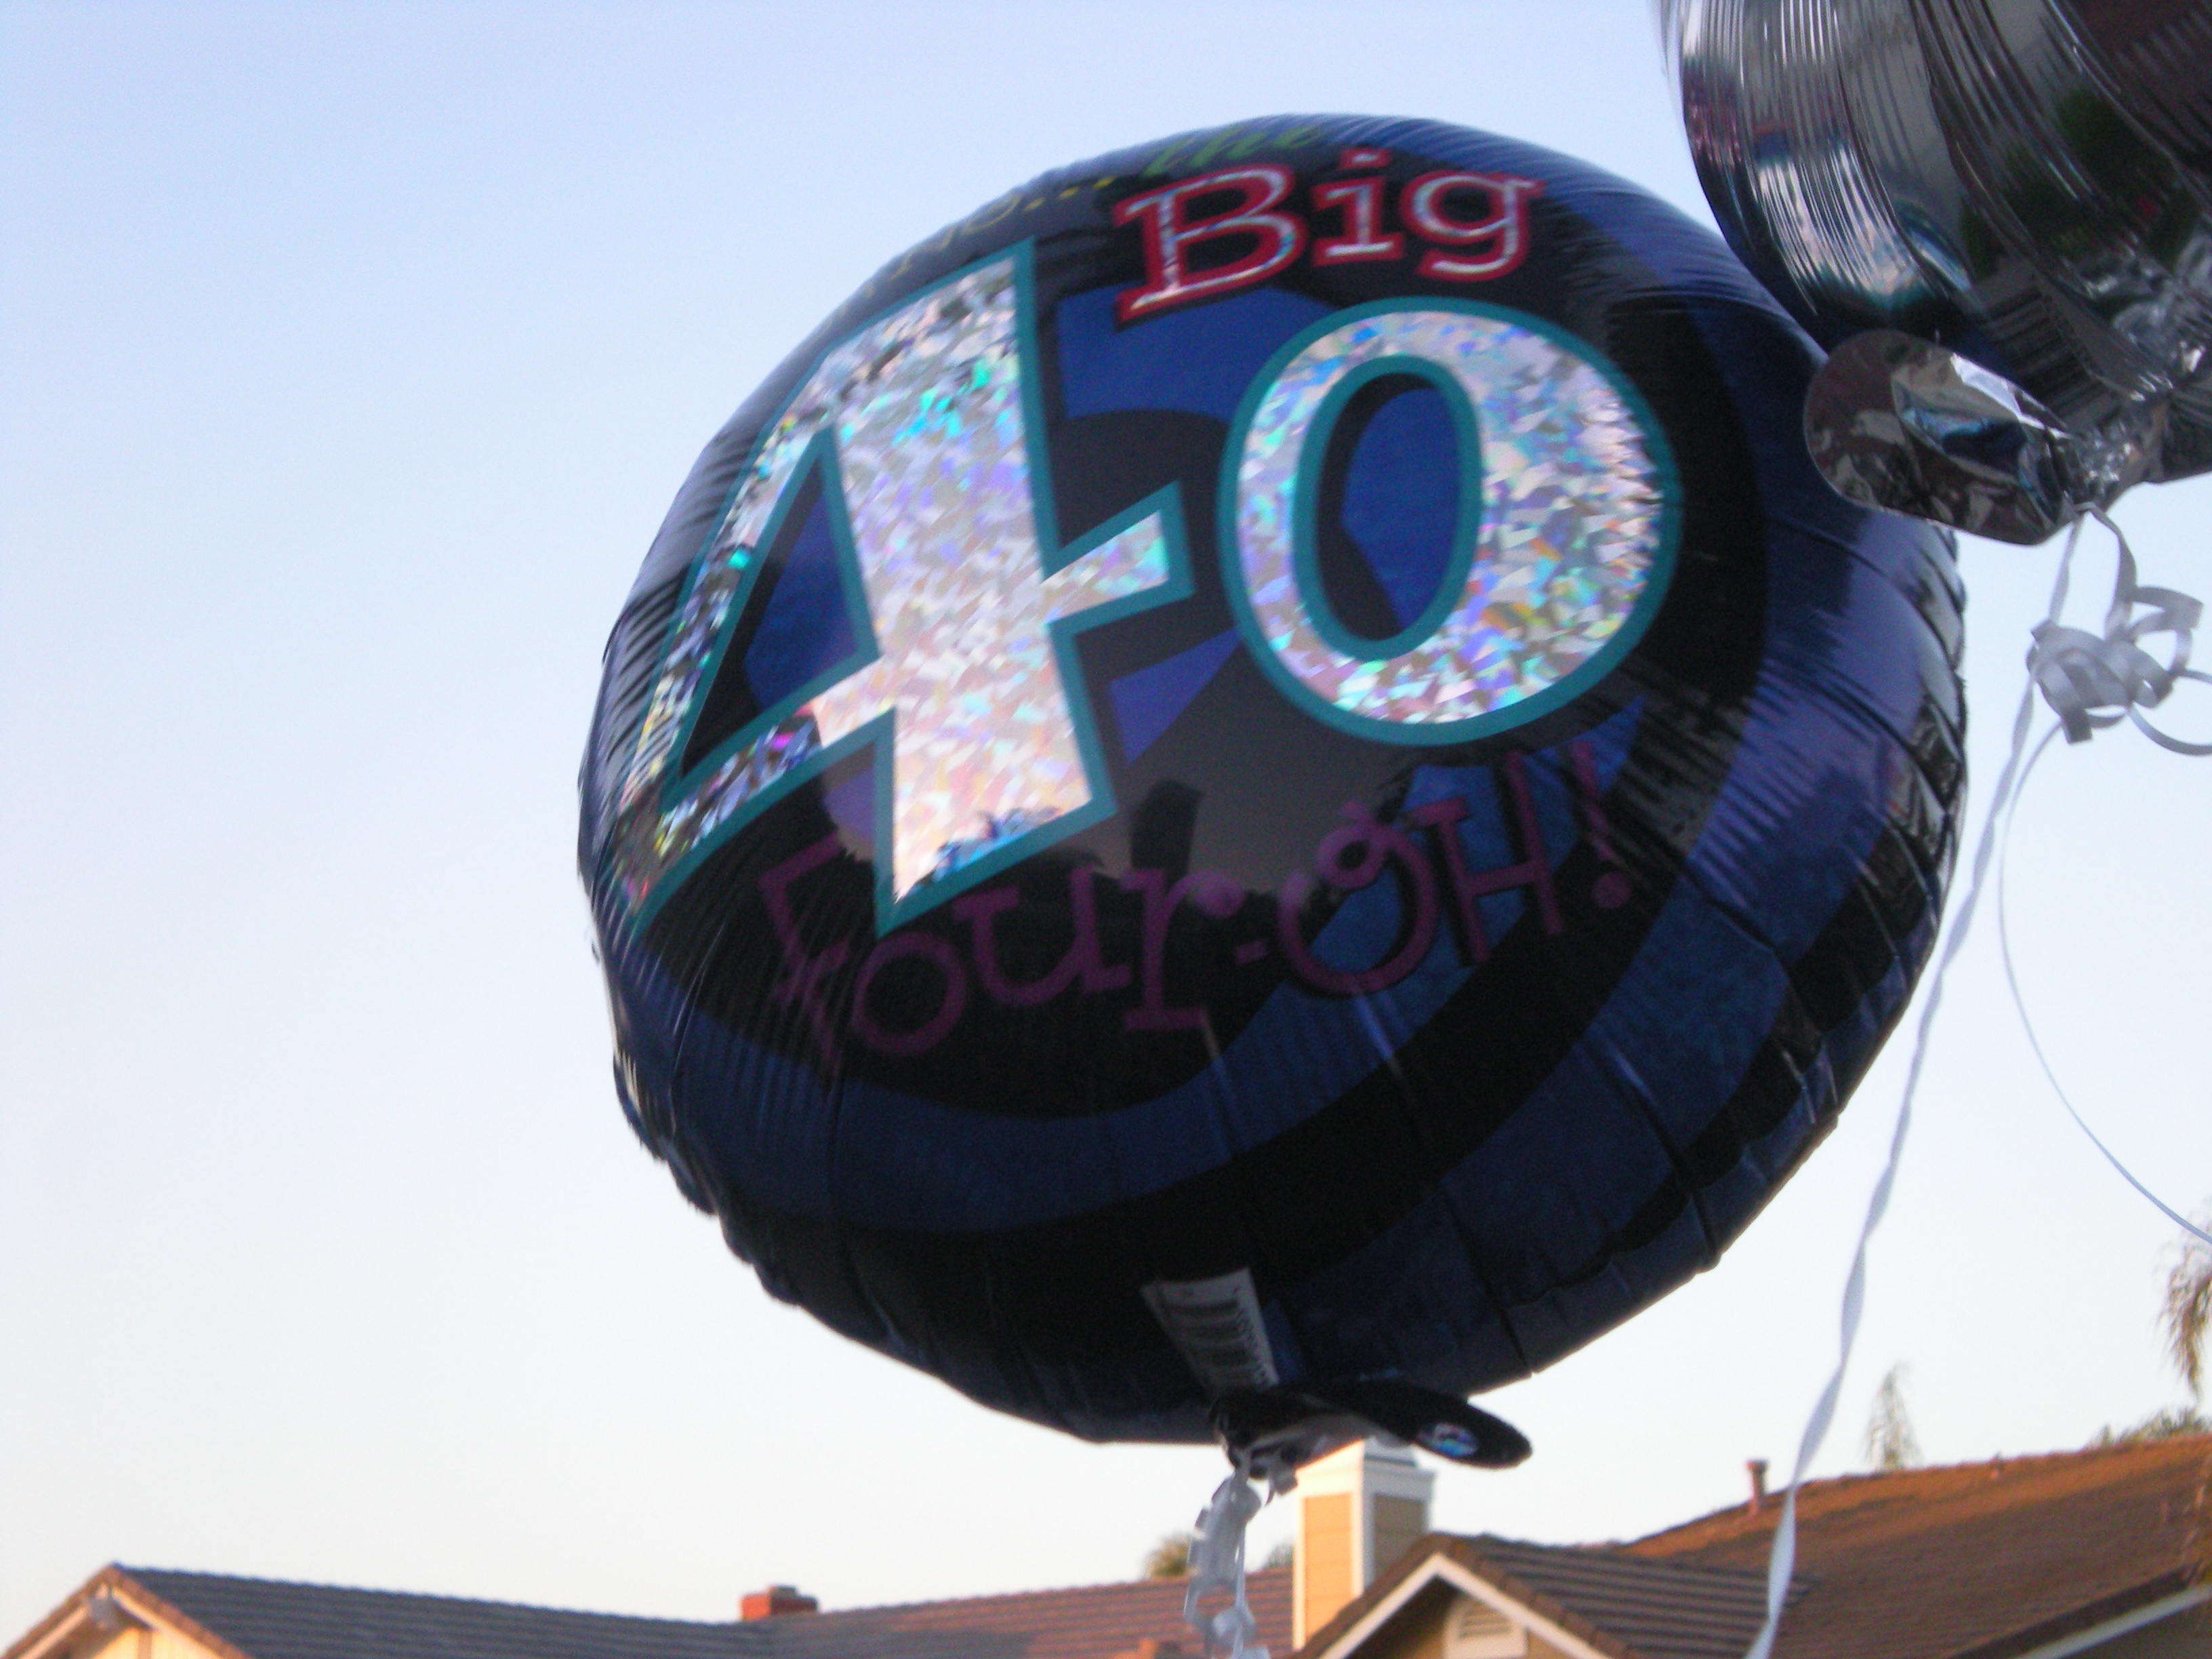 Alan's 40th balloon